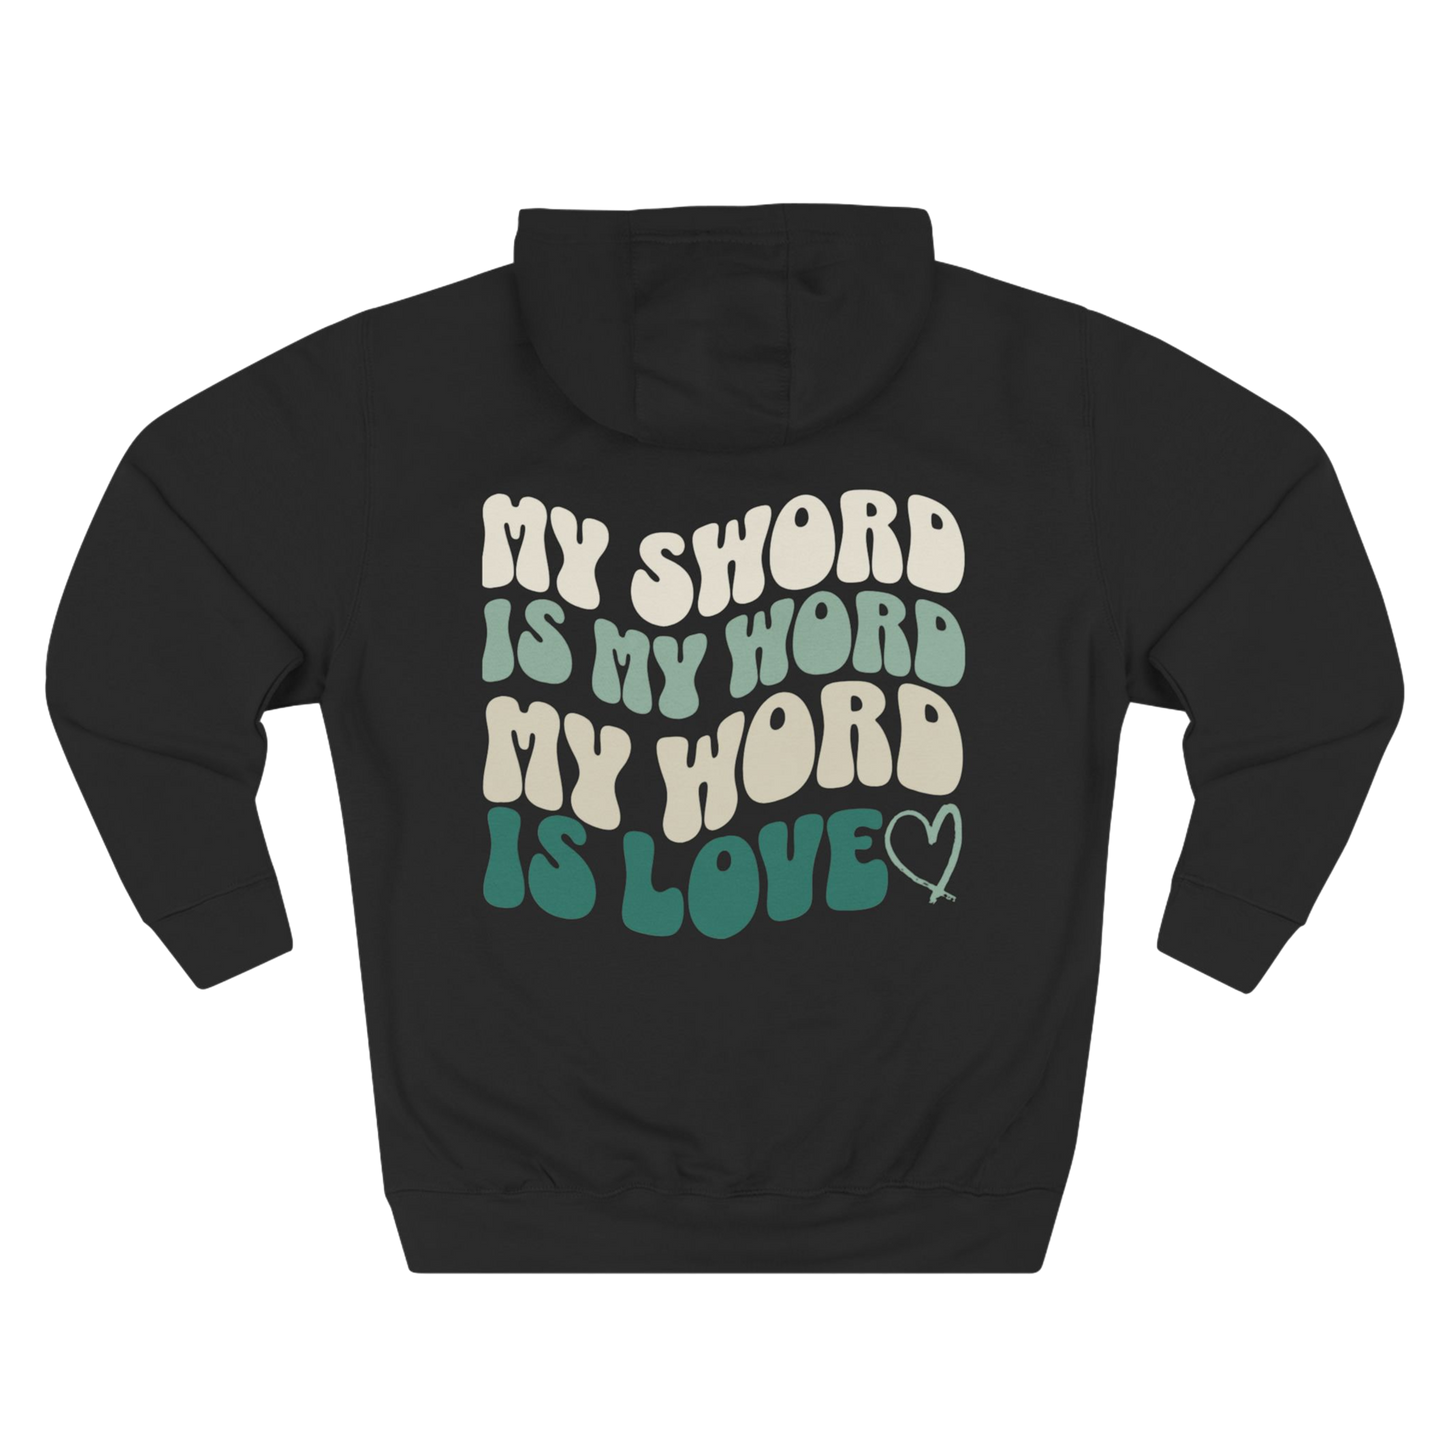  BoundlessFaith - My Sword is My Word, My Word is Love - Christian Apparel Hoodie BLACK - TRUE Apparel of God